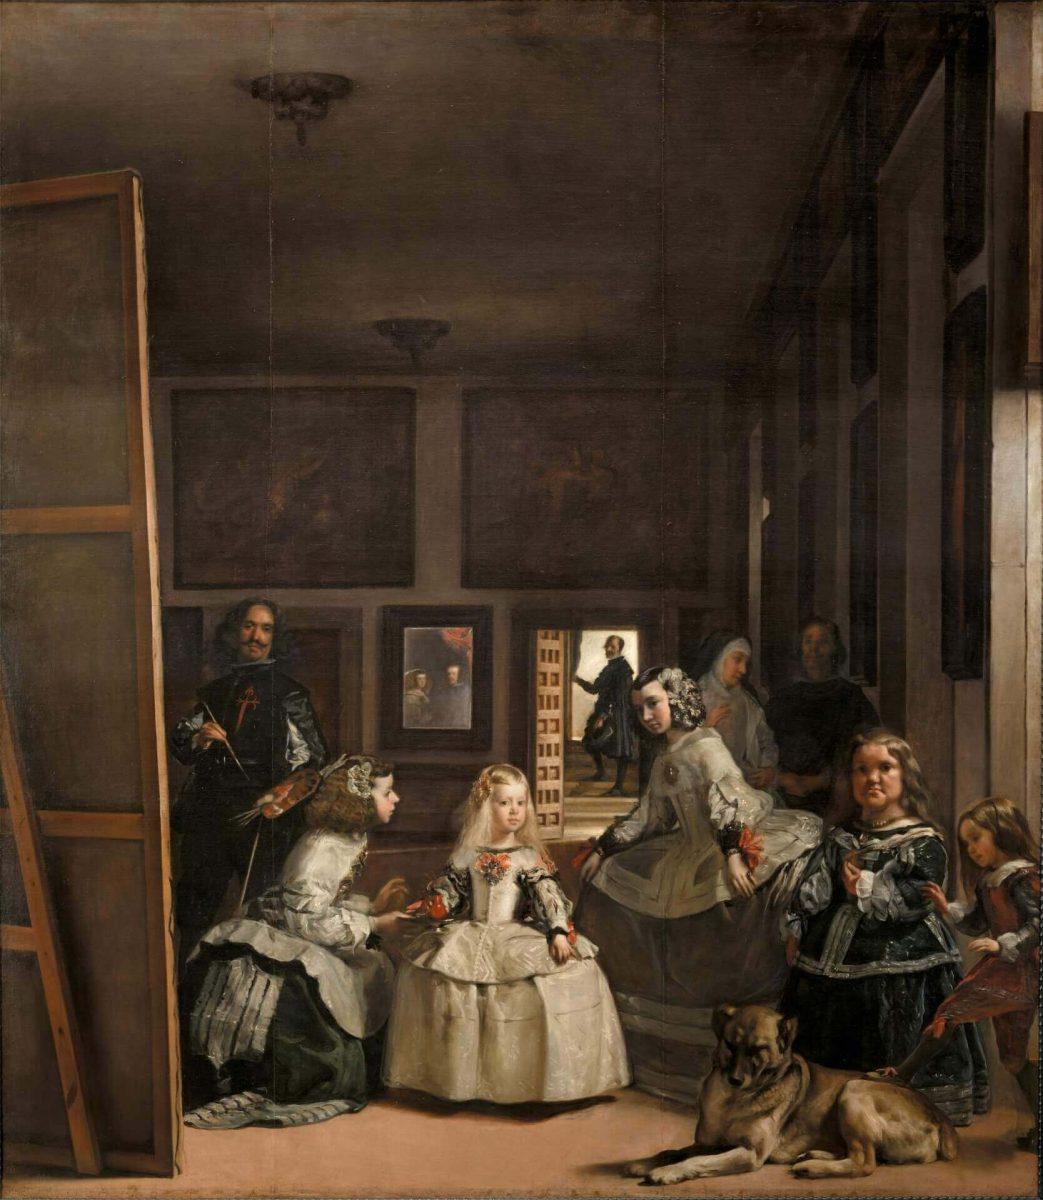 Muzej Prado. 7 slik vrednih ogleda